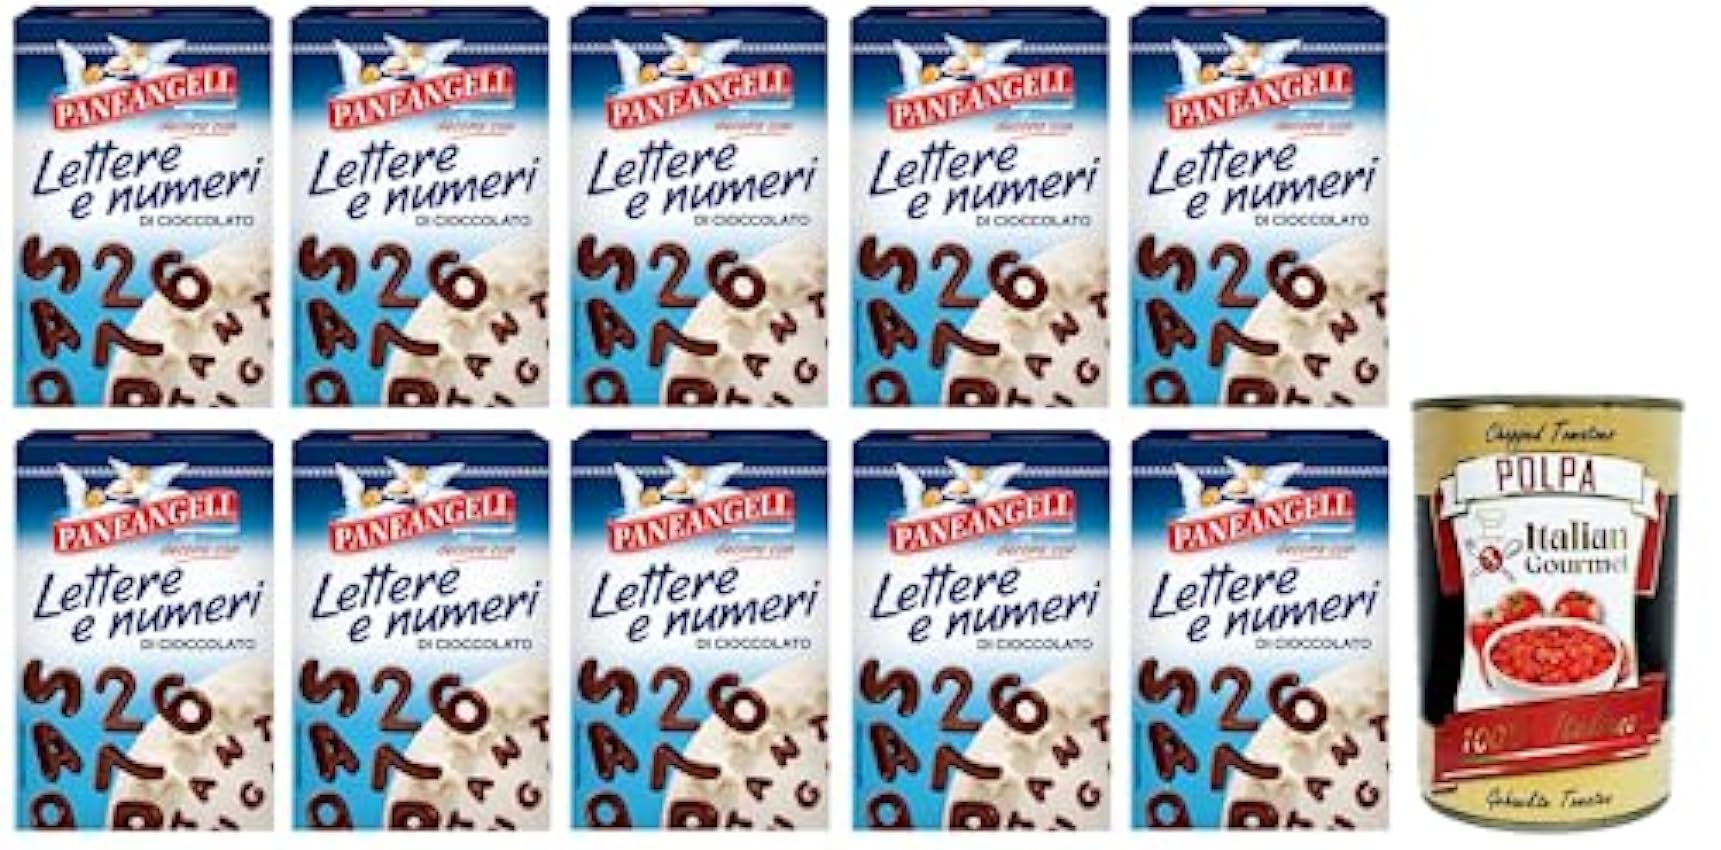 Paneangeli Lettere e Numeri di Cioccolato Lot de 10 lettres et chiffres en chocolat pour décorer les desserts, paquet de 60 g + boîte italienne Gourmet Polpa di Pomodoro 400 g MvMTVN0X